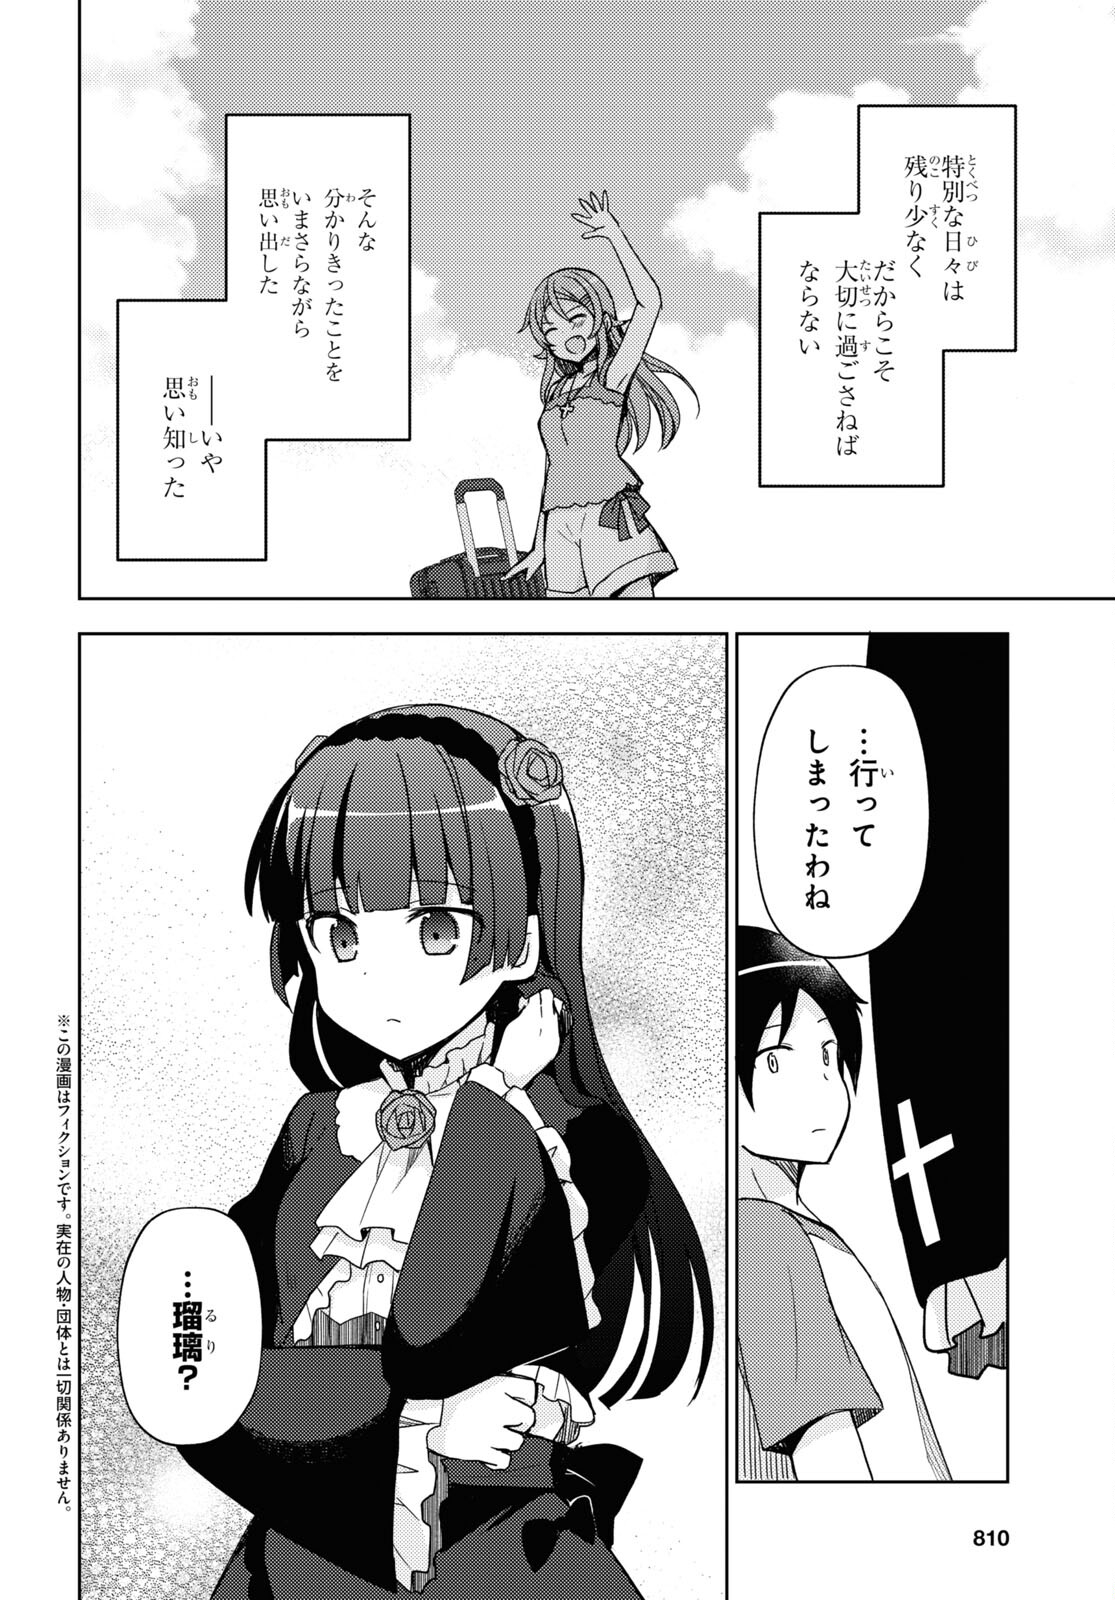 Ore no Imouto ga Konna ni Kawaii Wake ga Nai Kuroneko if - Chapter 25 - Page 2